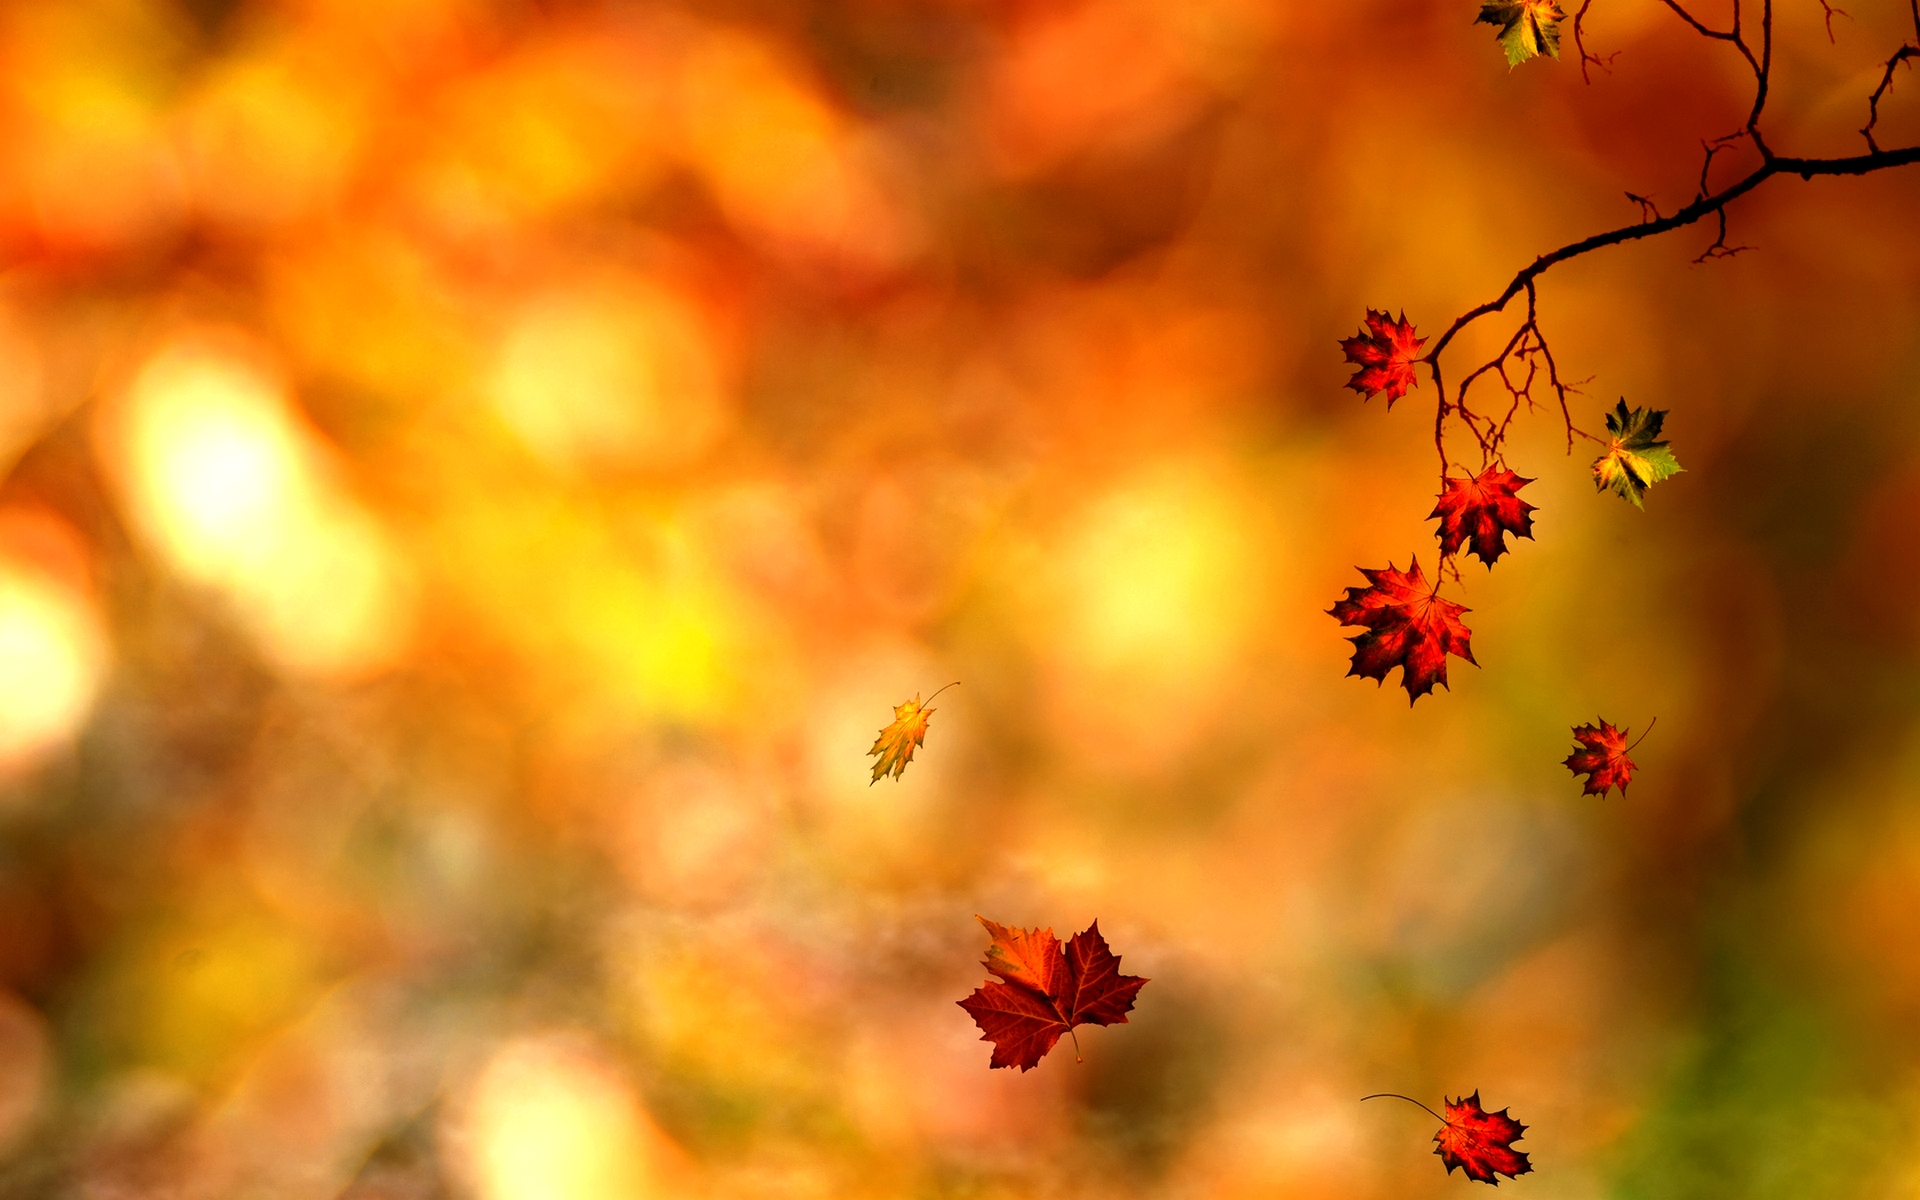 Autumn Leaves Design